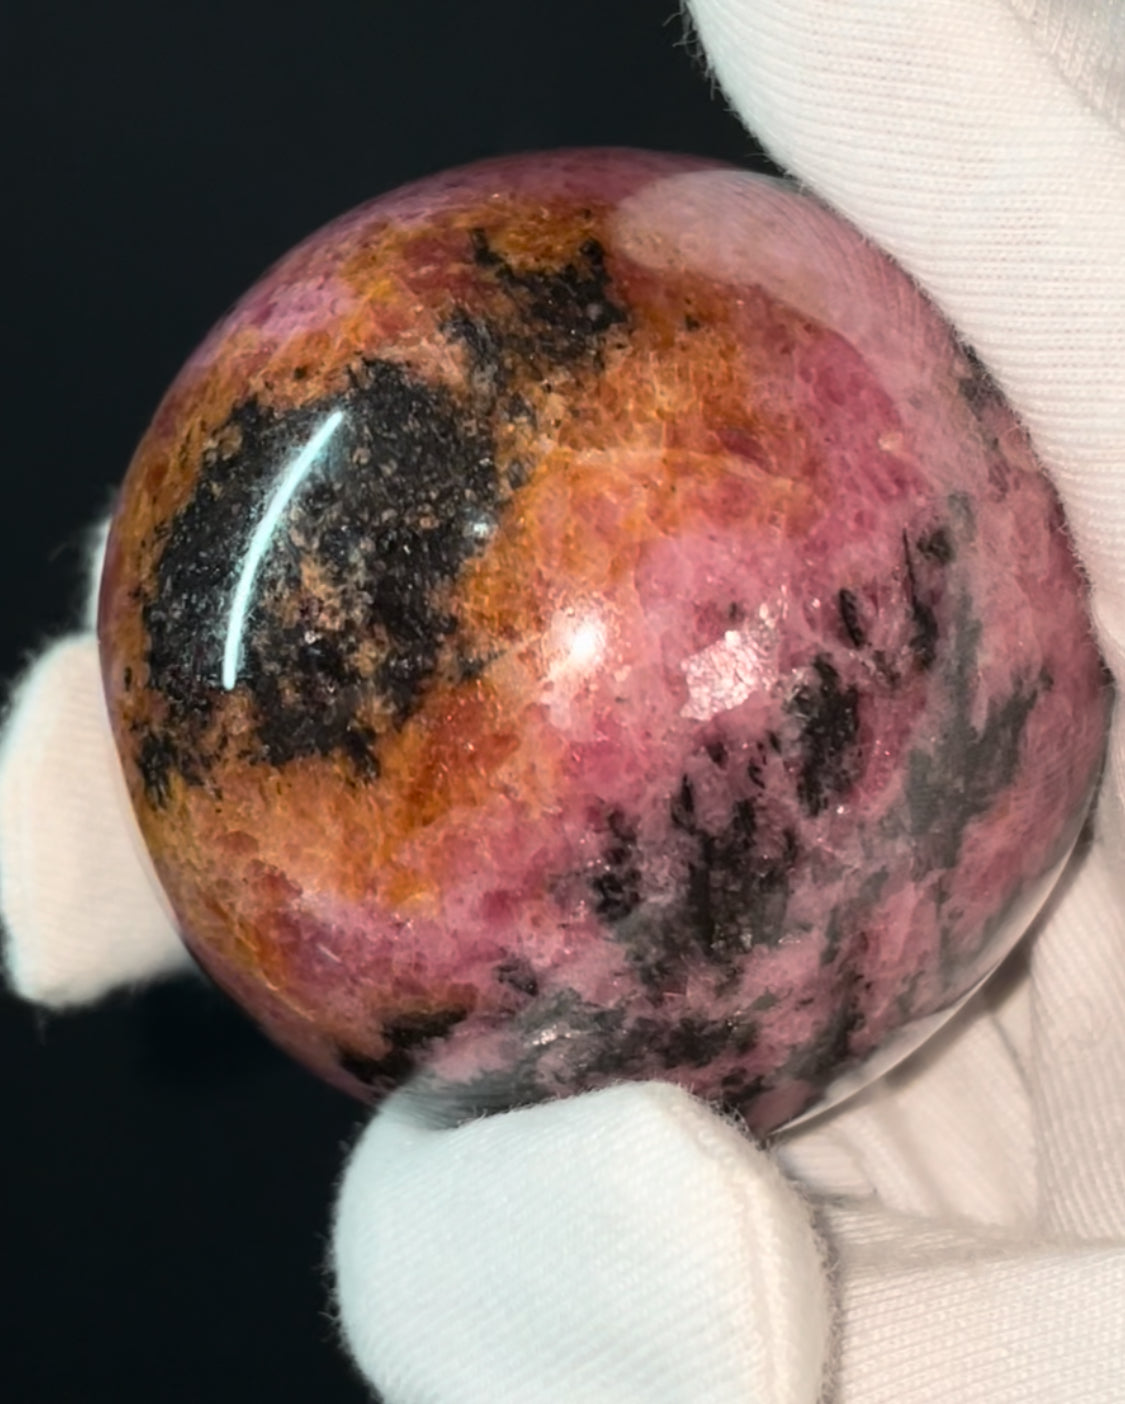 Rhodonite Gemstone Crystal Sphere